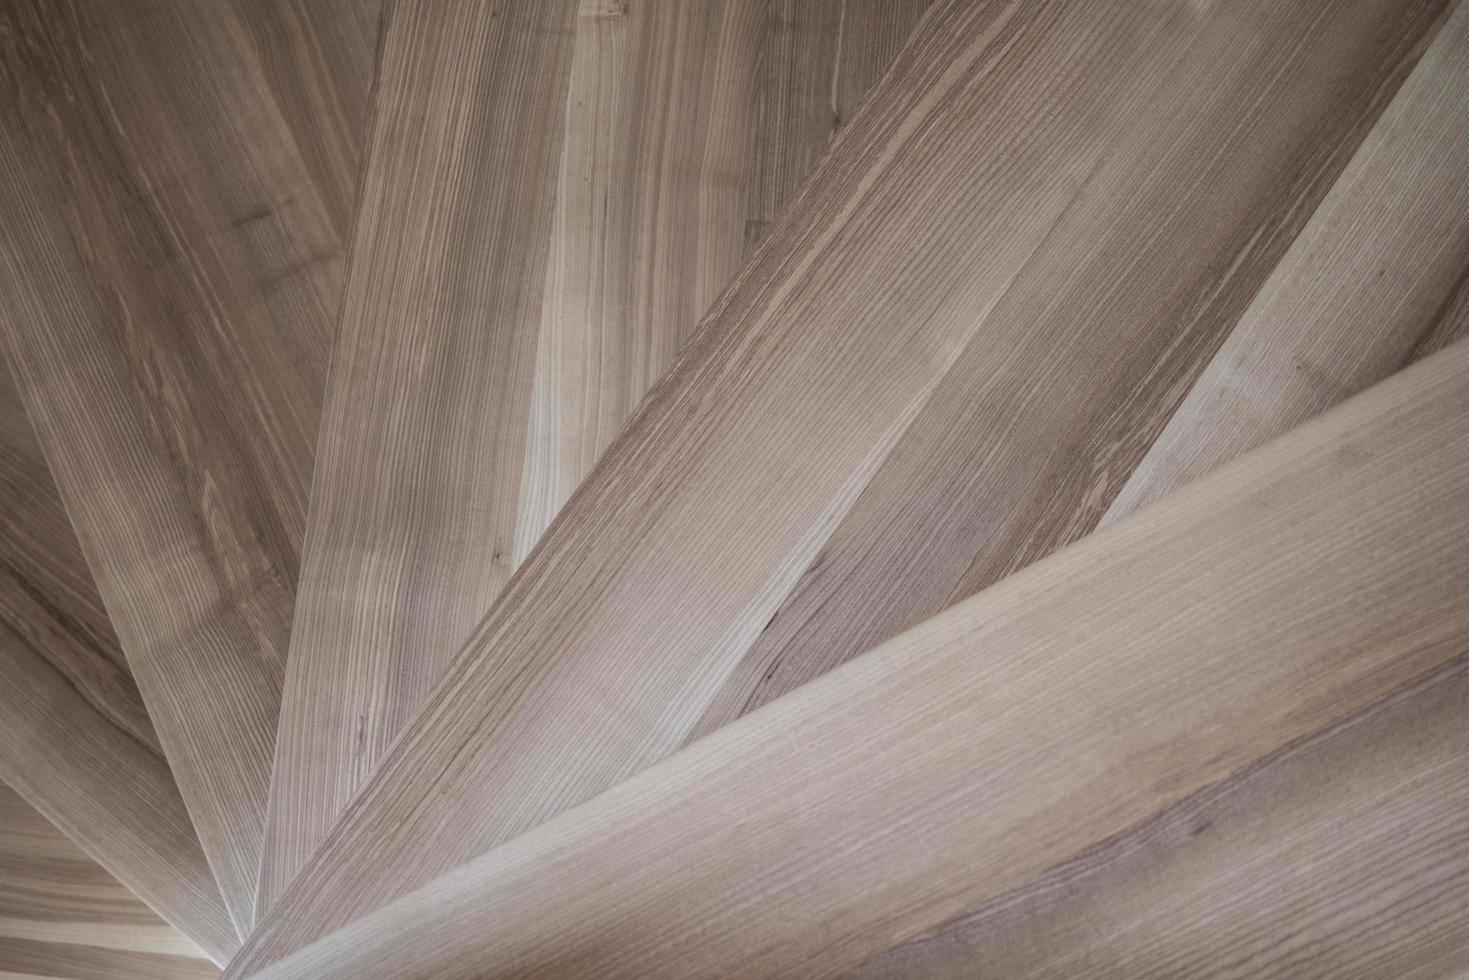 textura de madera ceniza radial escaleras fondos de pantalla foto